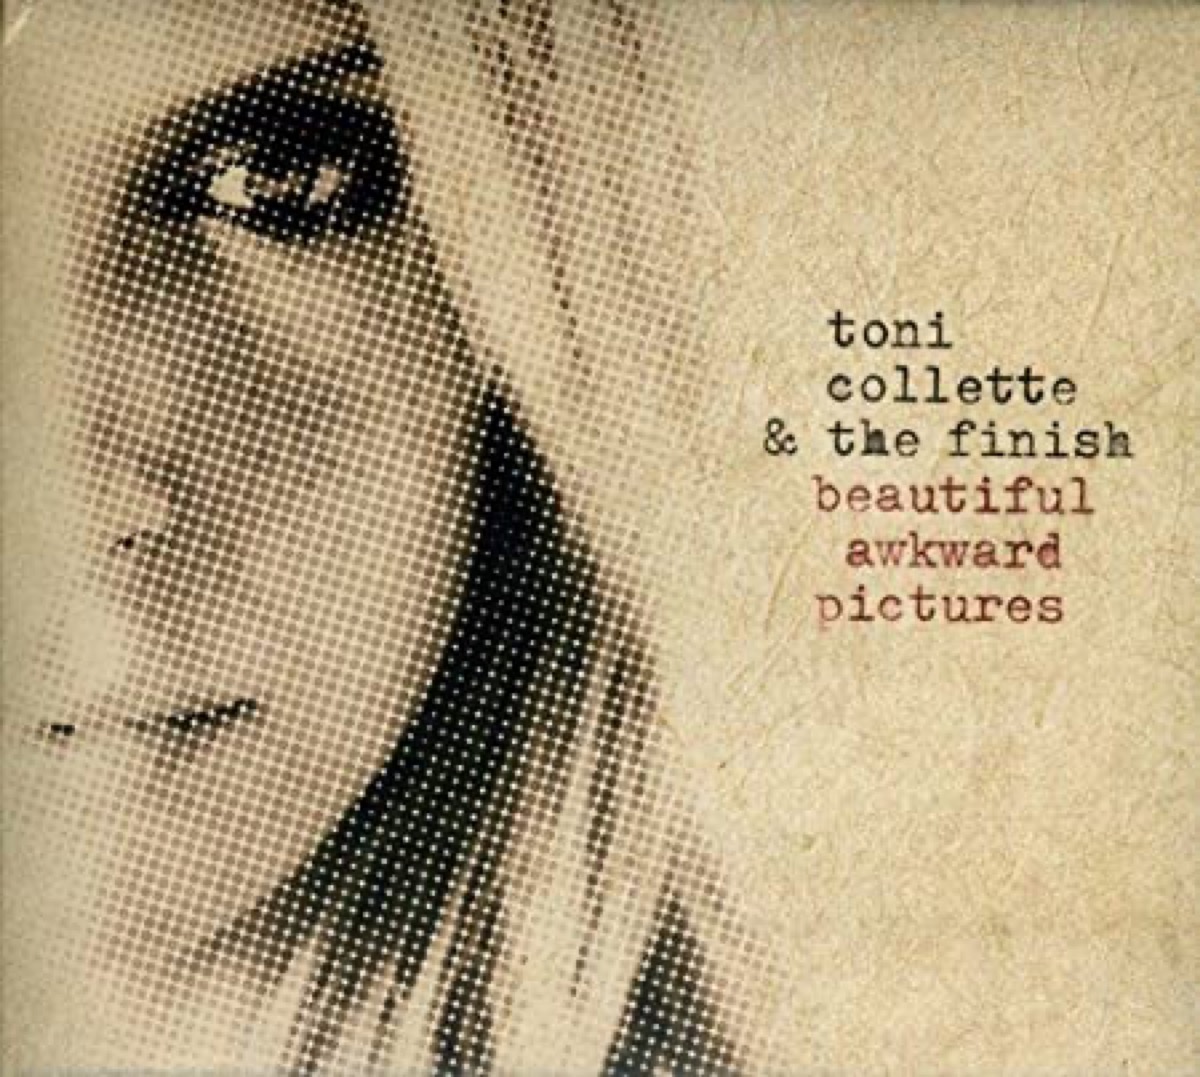 Toni Collette and the Finish album cover